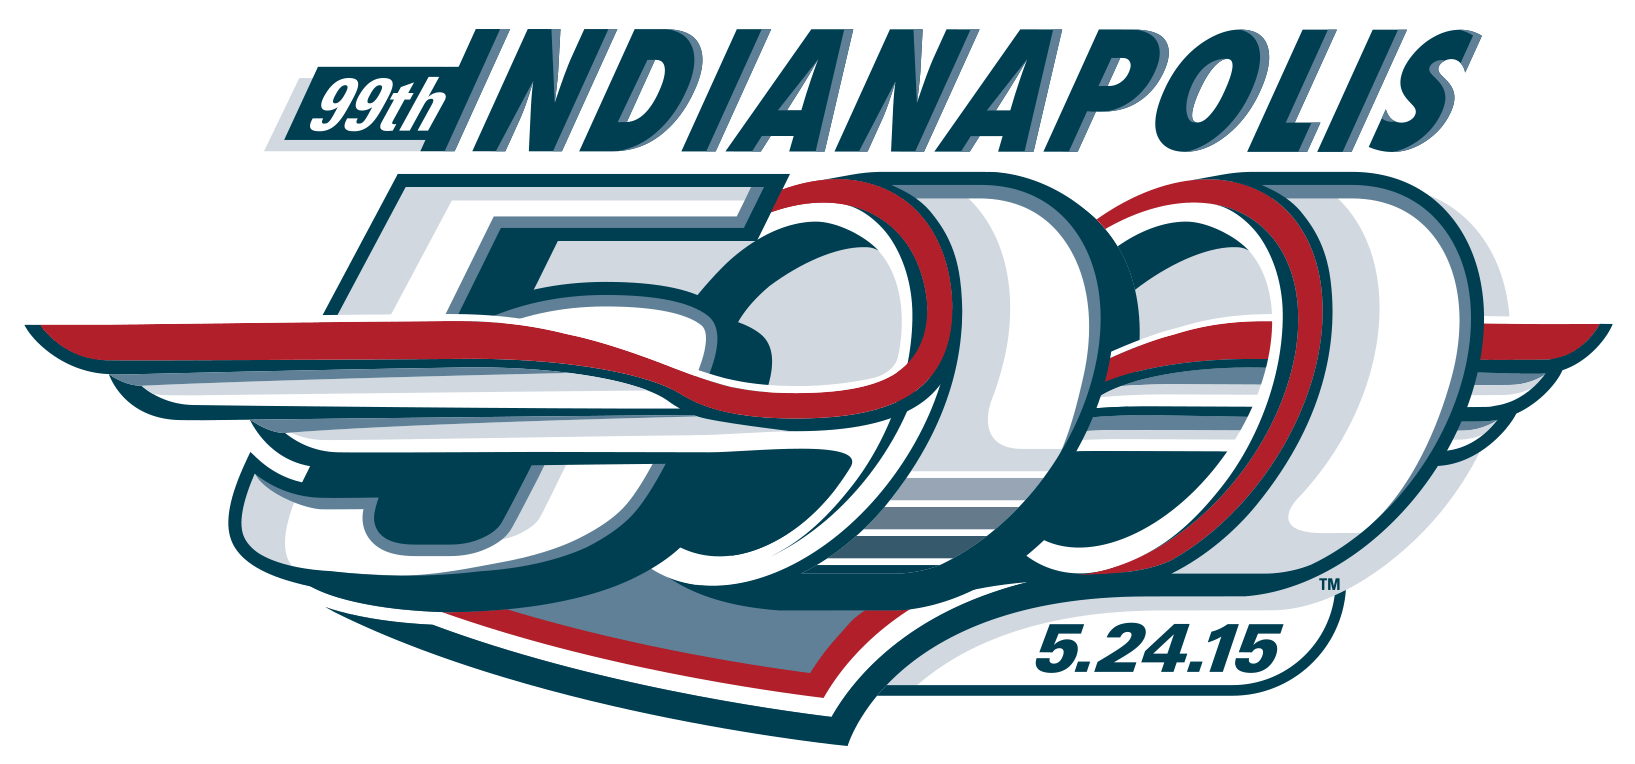 Indianapolis Logo - Indianapolis 500 Primary Logo Series (IndyCar)